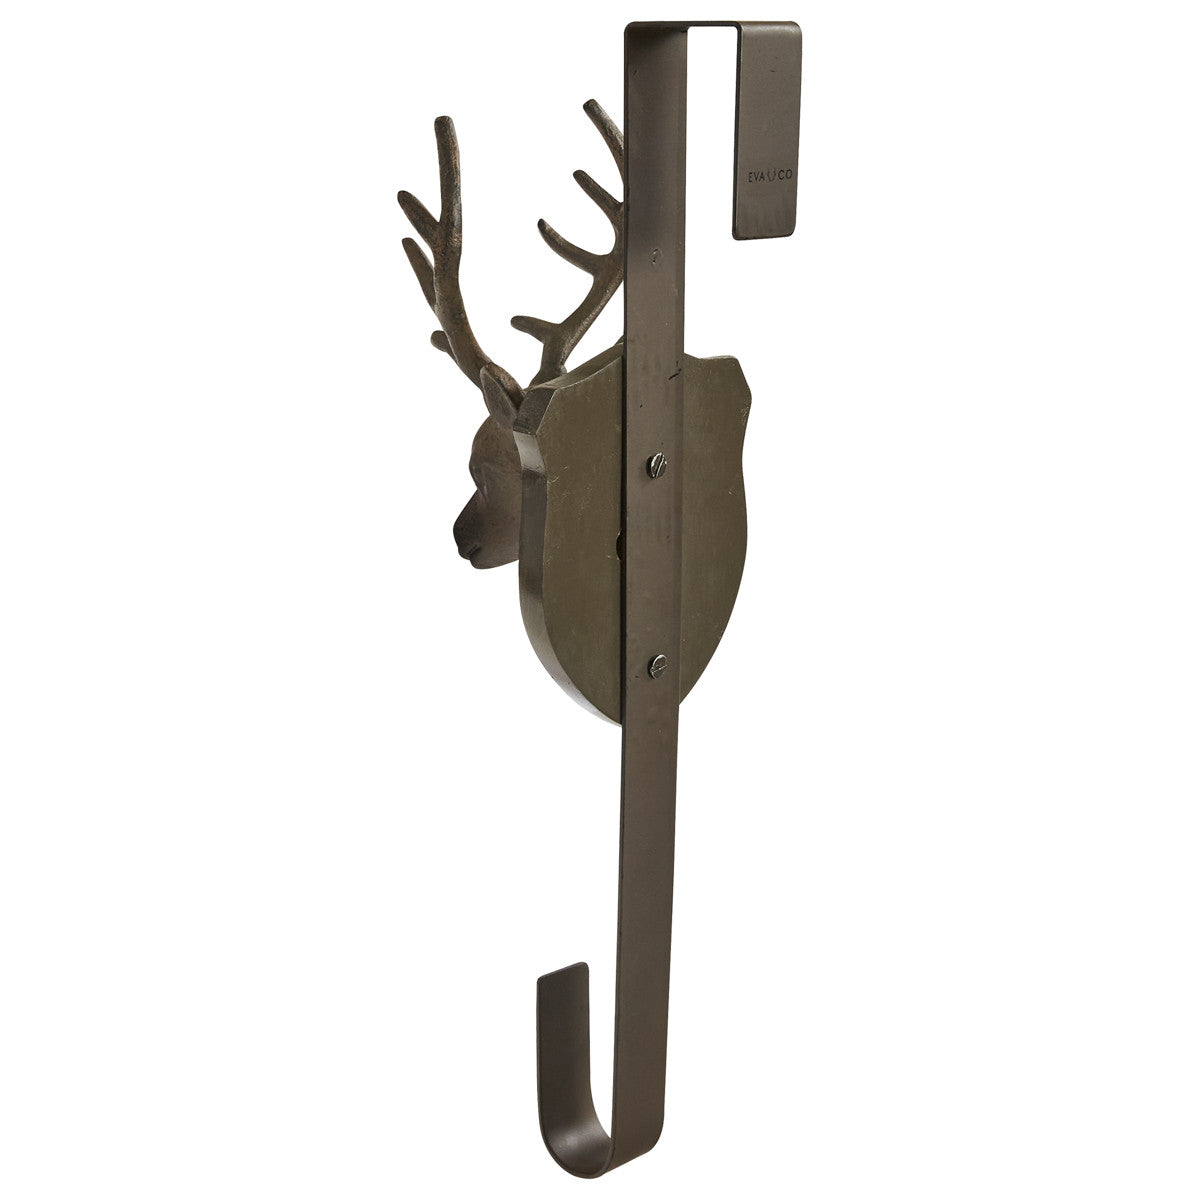 Deer Head Wreath Hanger - Park Designs